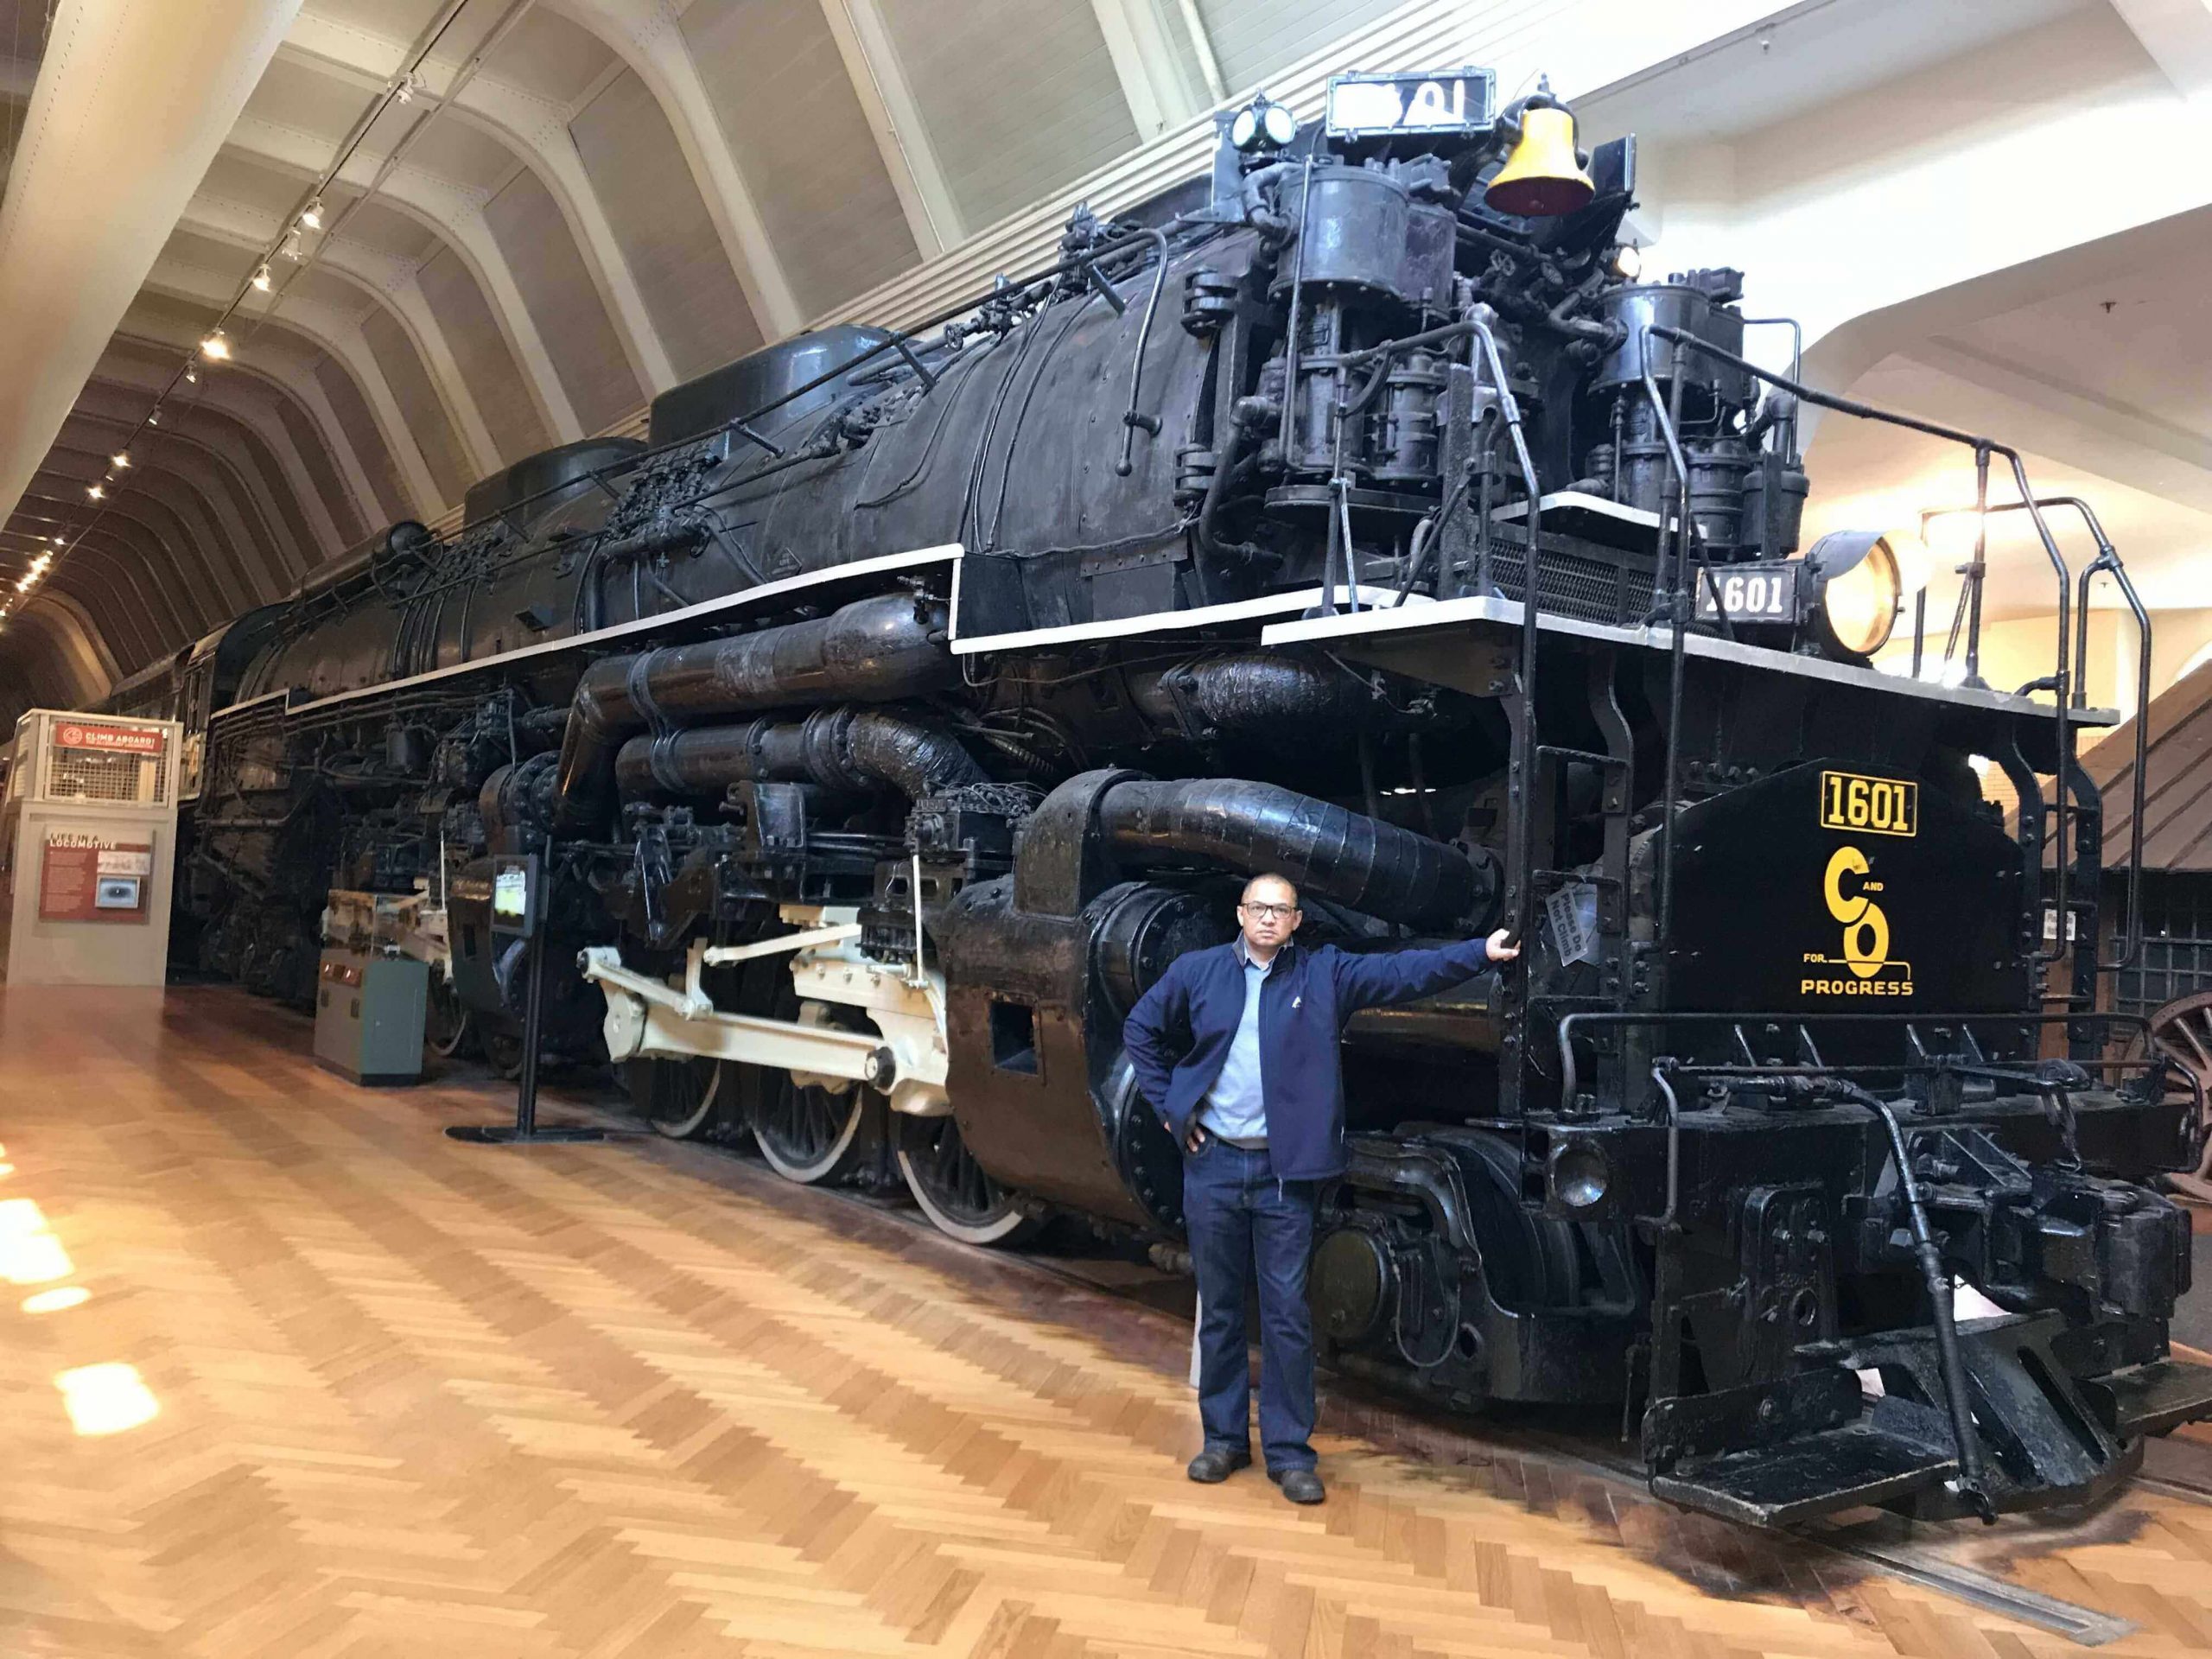 Allegheny Steam Locomotive